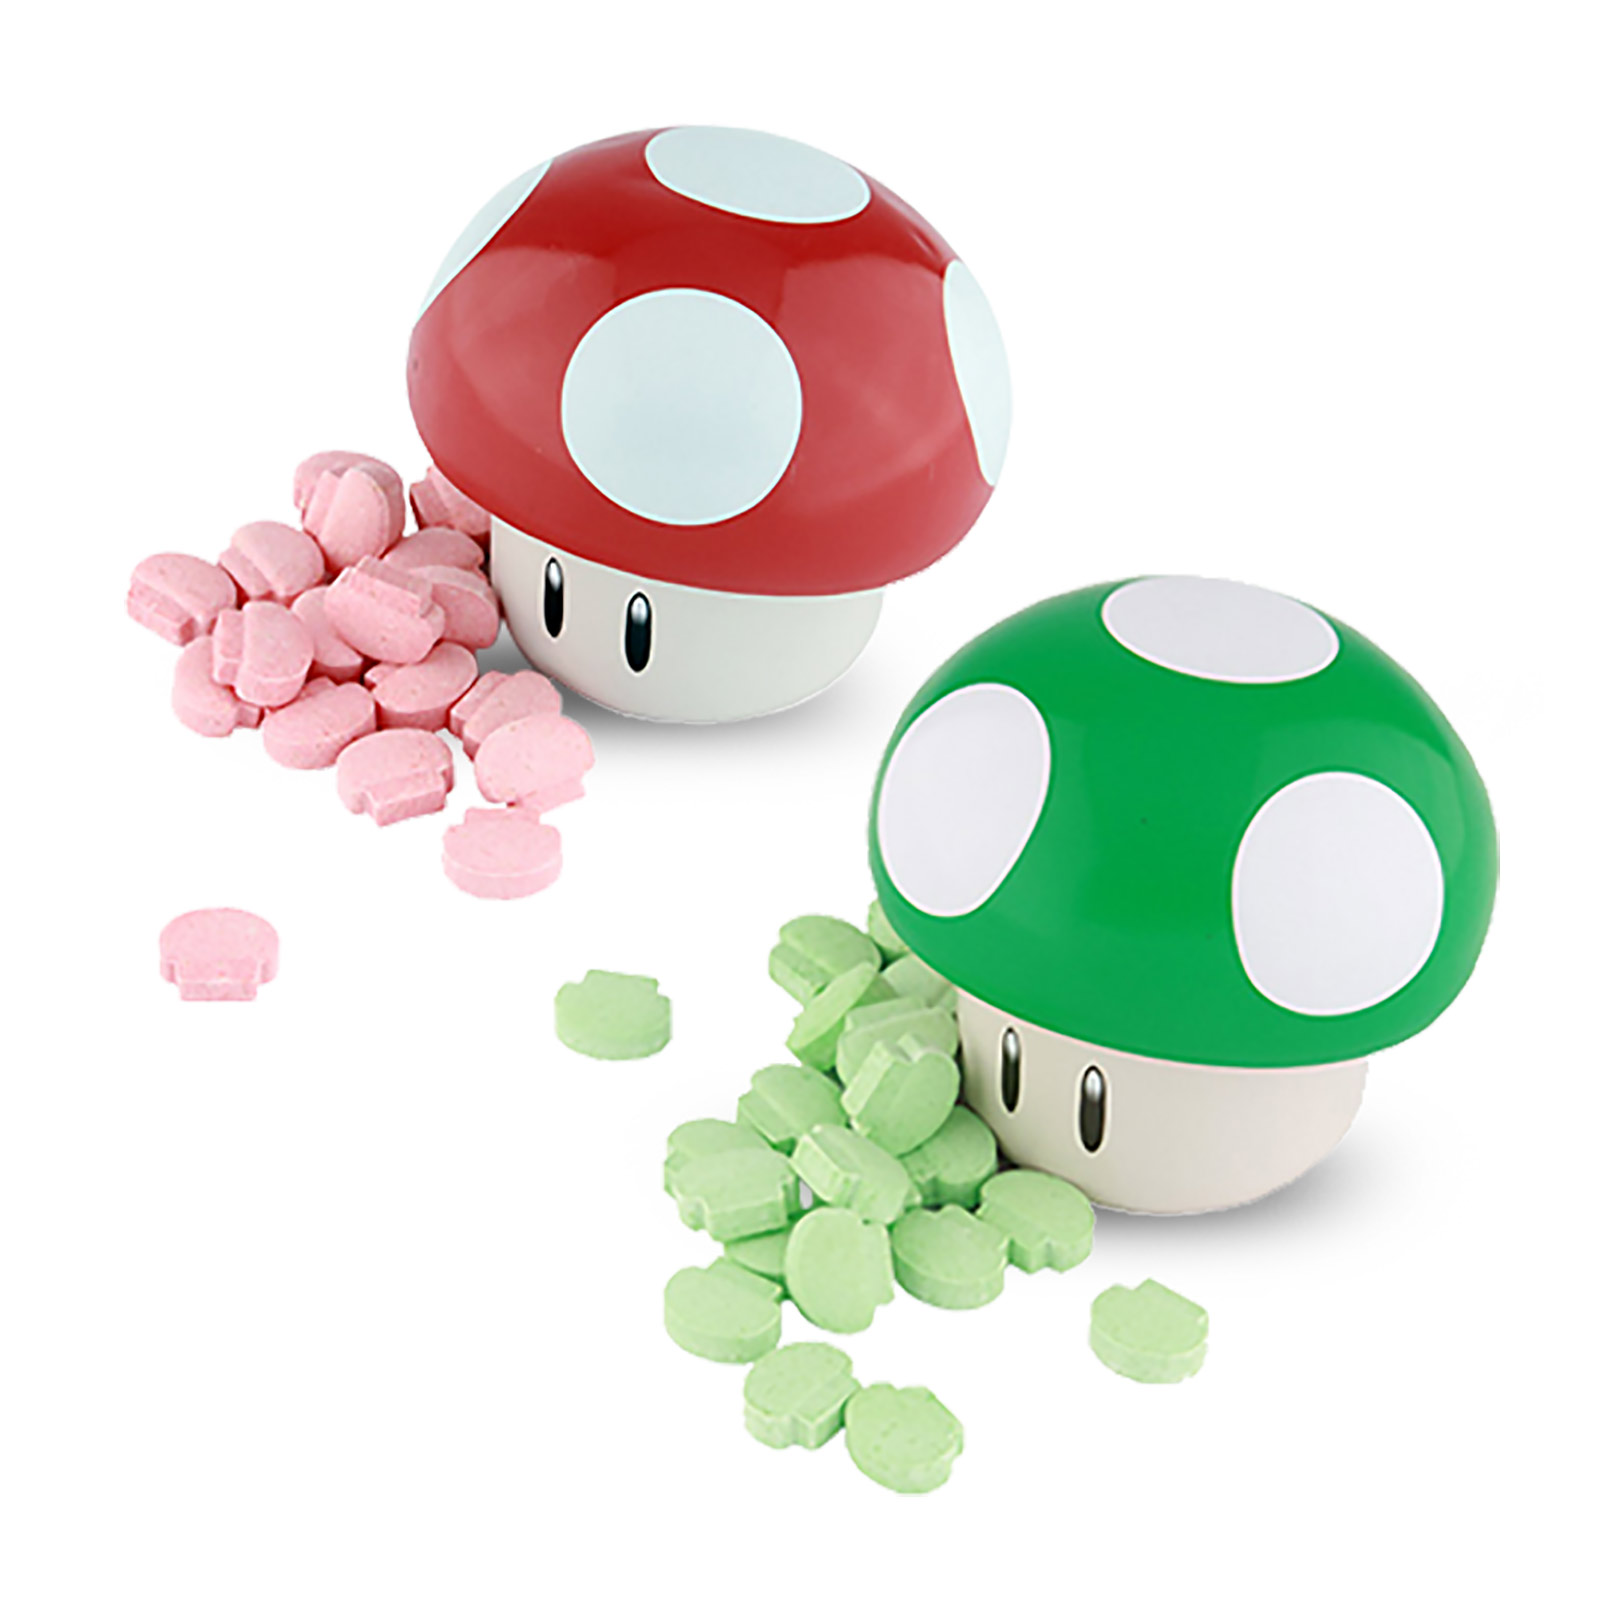 Super Mario - Mushroom Candies